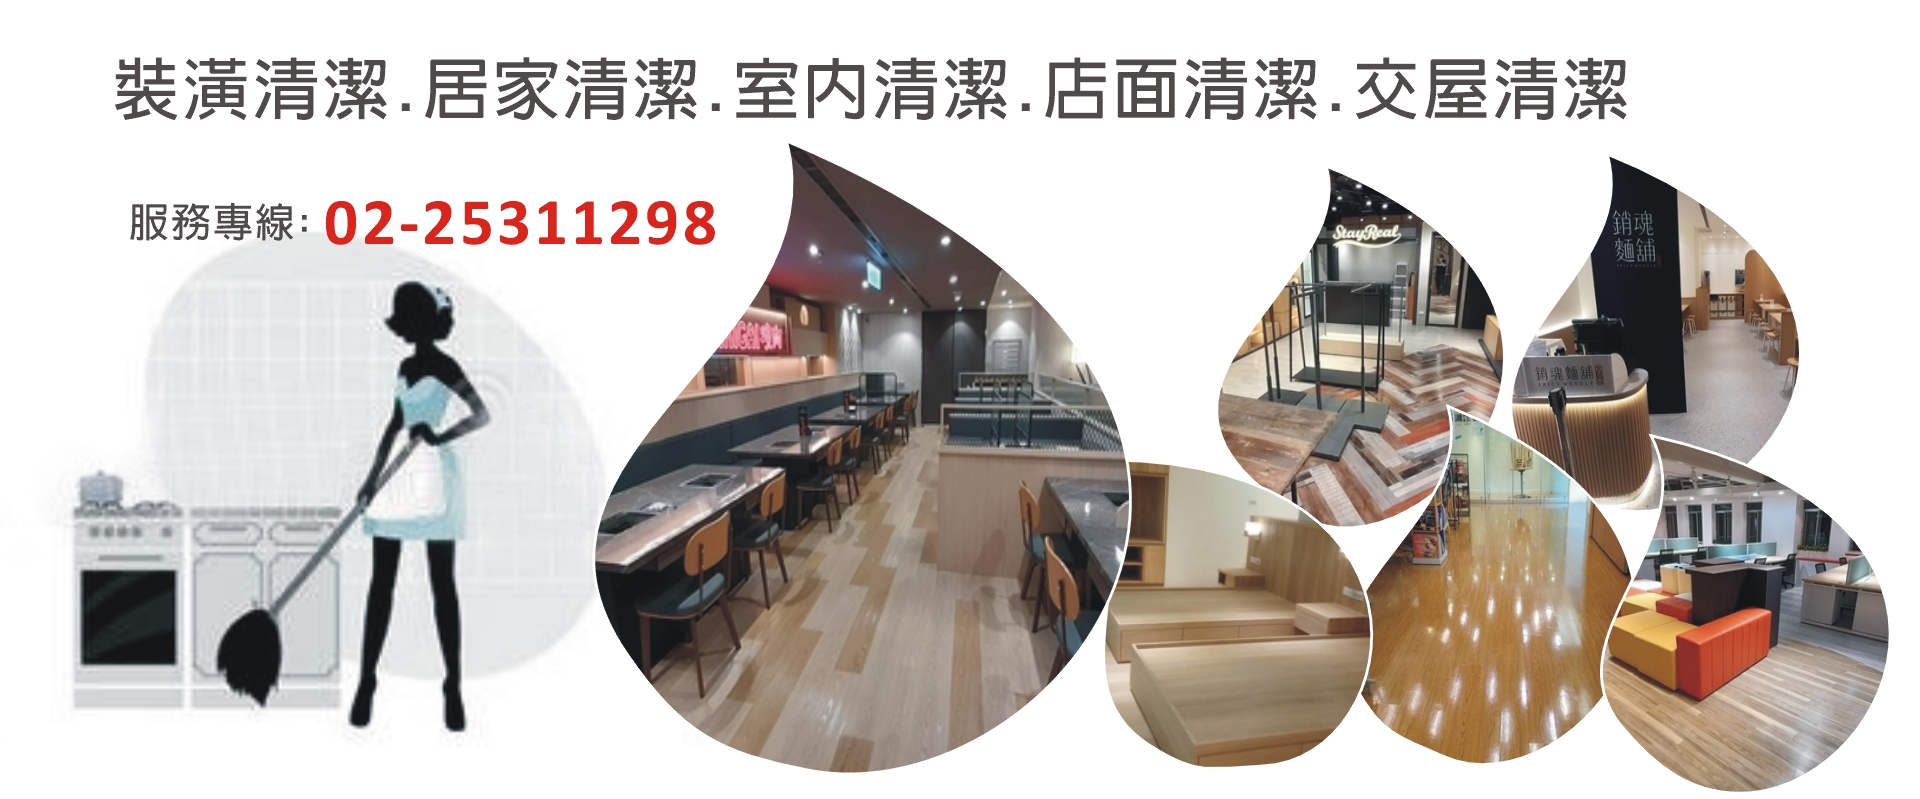 全擁實業有限公司-裝修細清,台北辦公室清潔,居家清潔,裝潢清潔,室內清潔